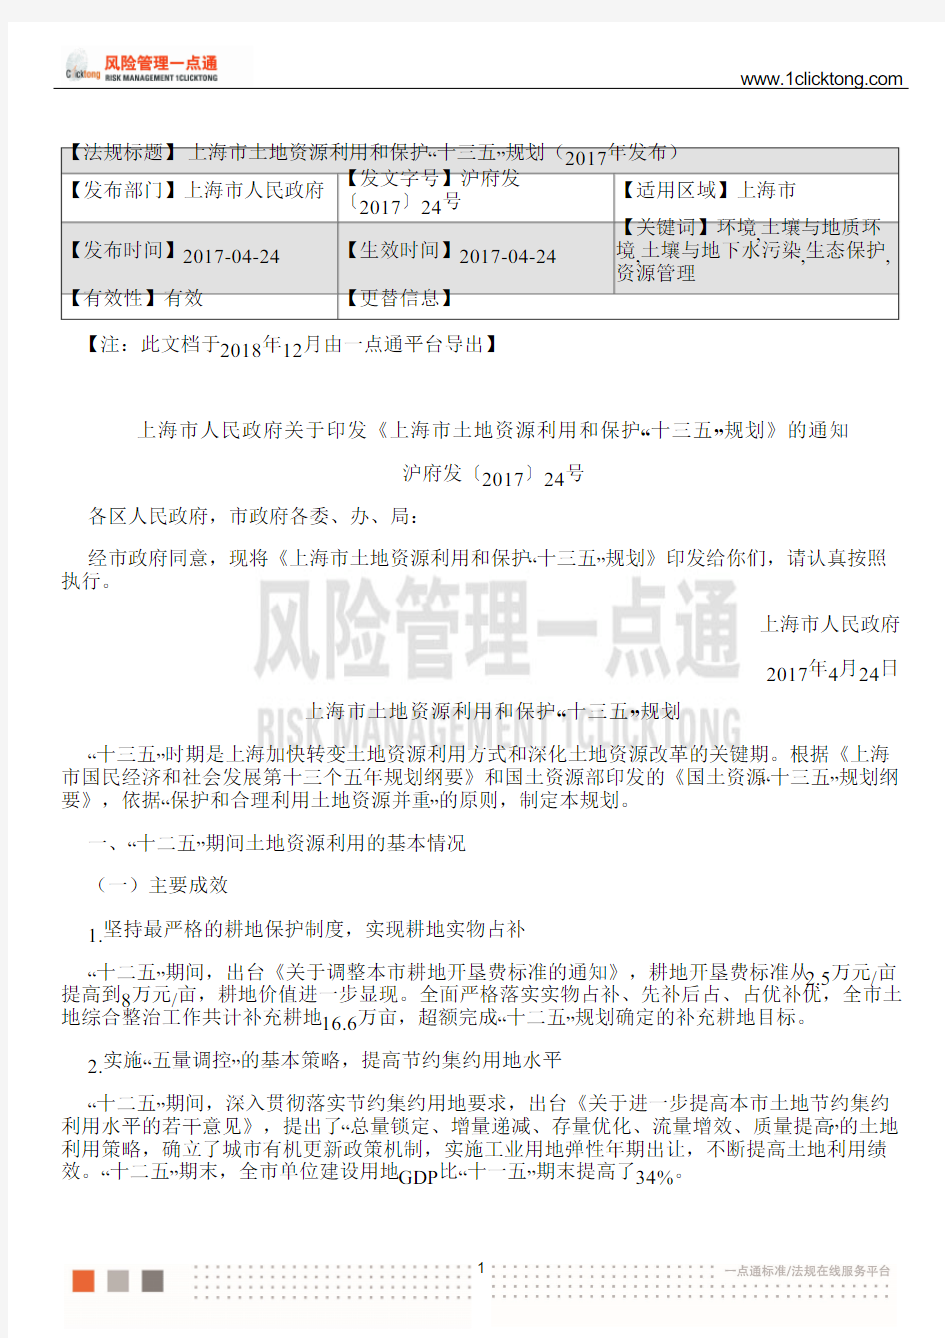 上海市土地资源利用和保护“十三五”规划(2017年发布)